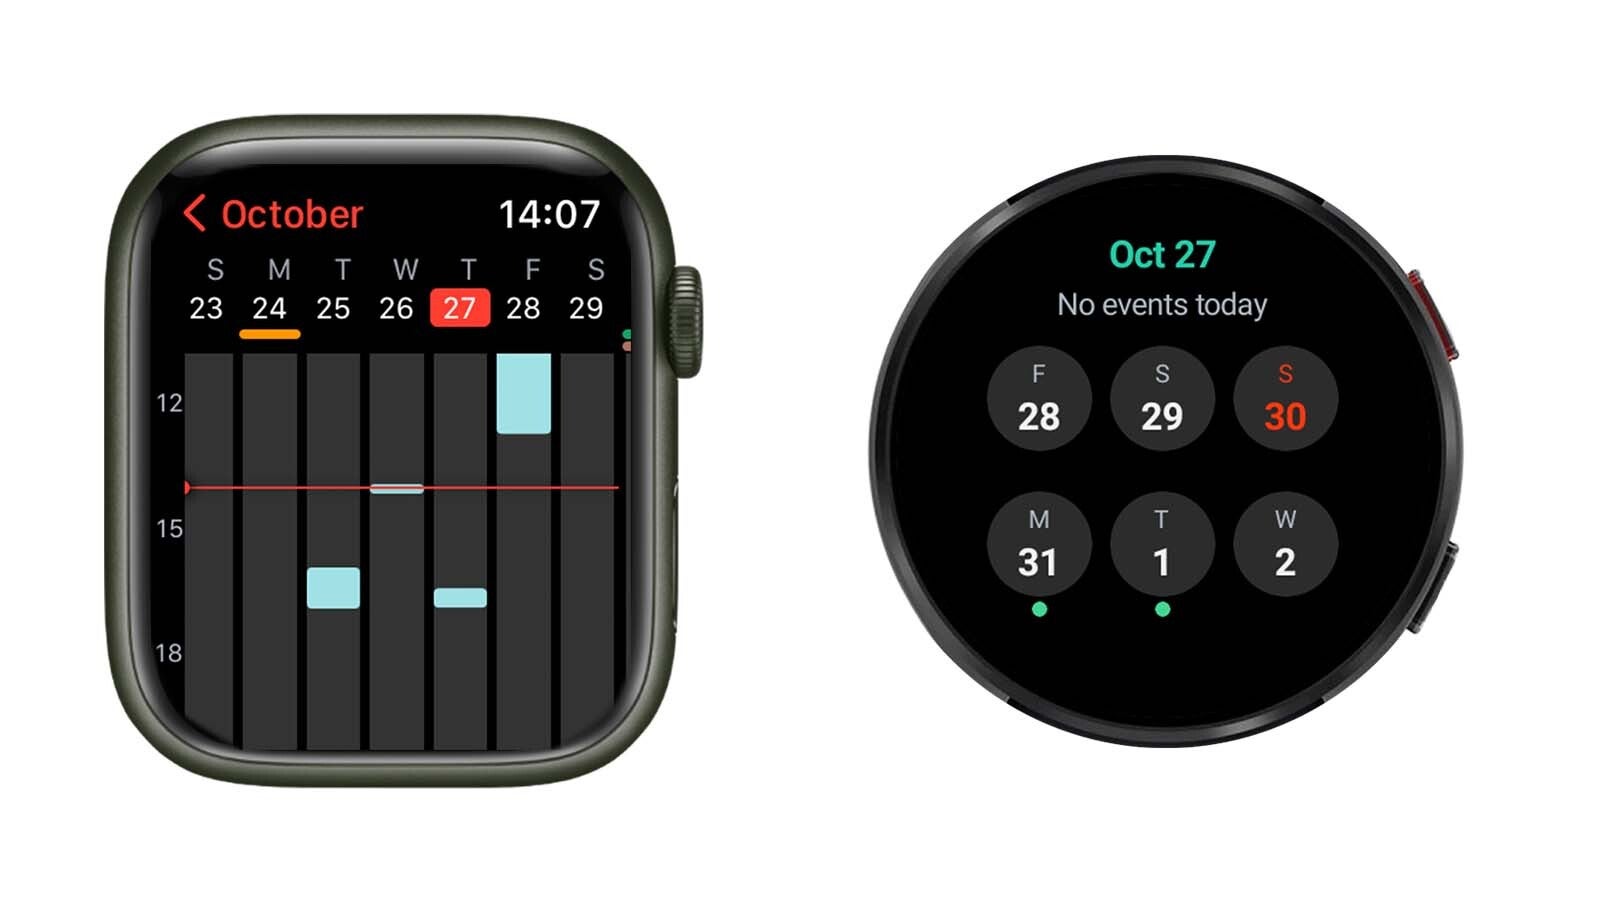 Comparación de la interfaz de Apple Watch vs Samsung Galaxy Watch: ¿Son los relojes inteligentes redondos terriblemente poco prácticos?  Porque el Apple Watch rectangular tiene mucho más sentido